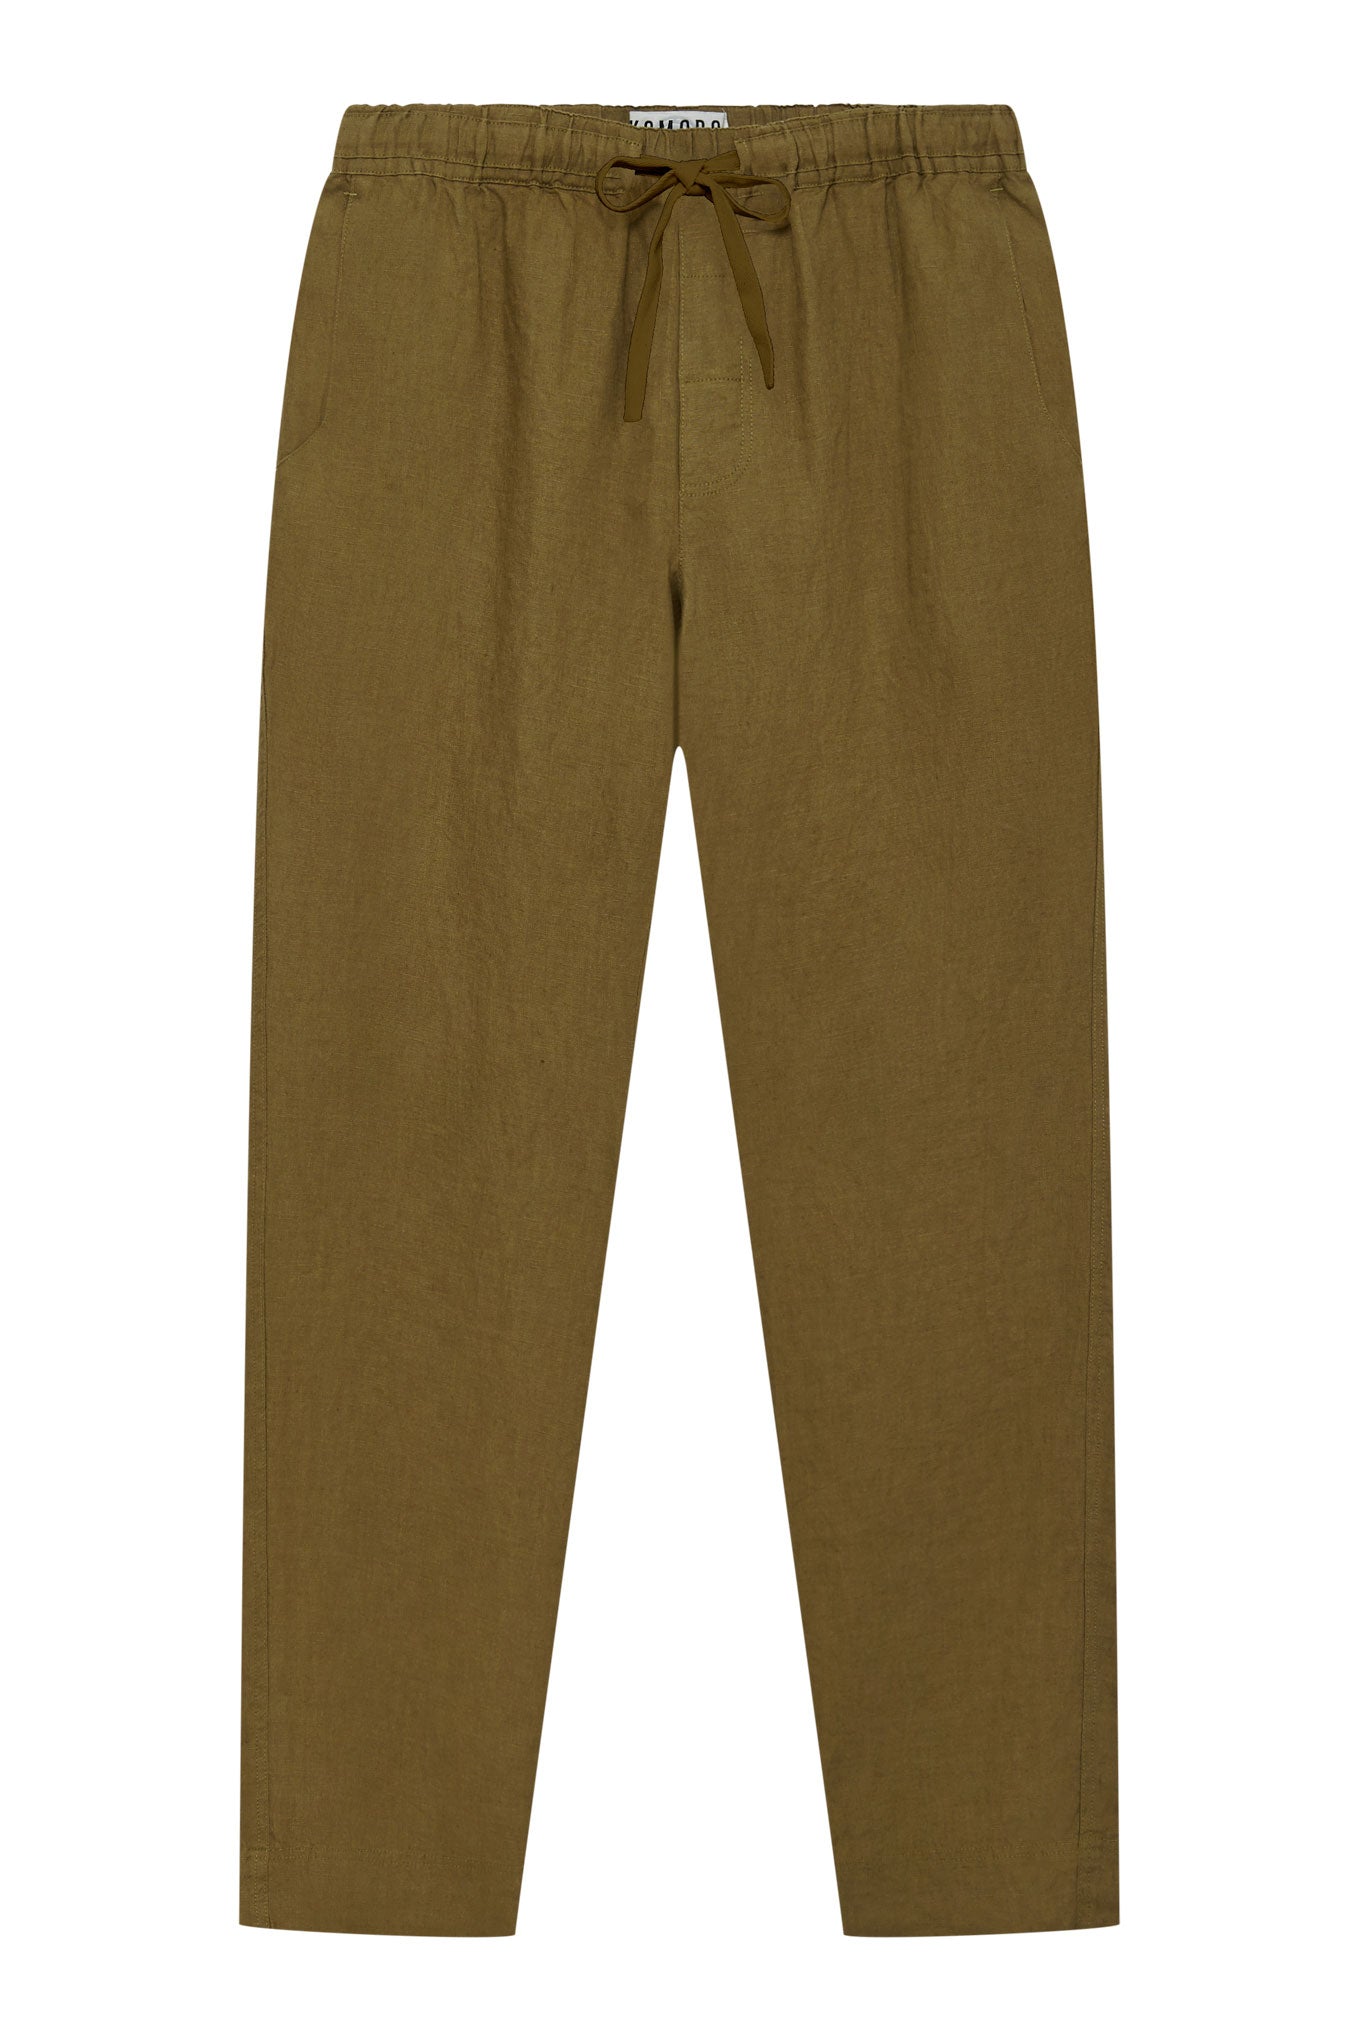 Komodo Men's Green August - Organic Linen Trouser Khaki